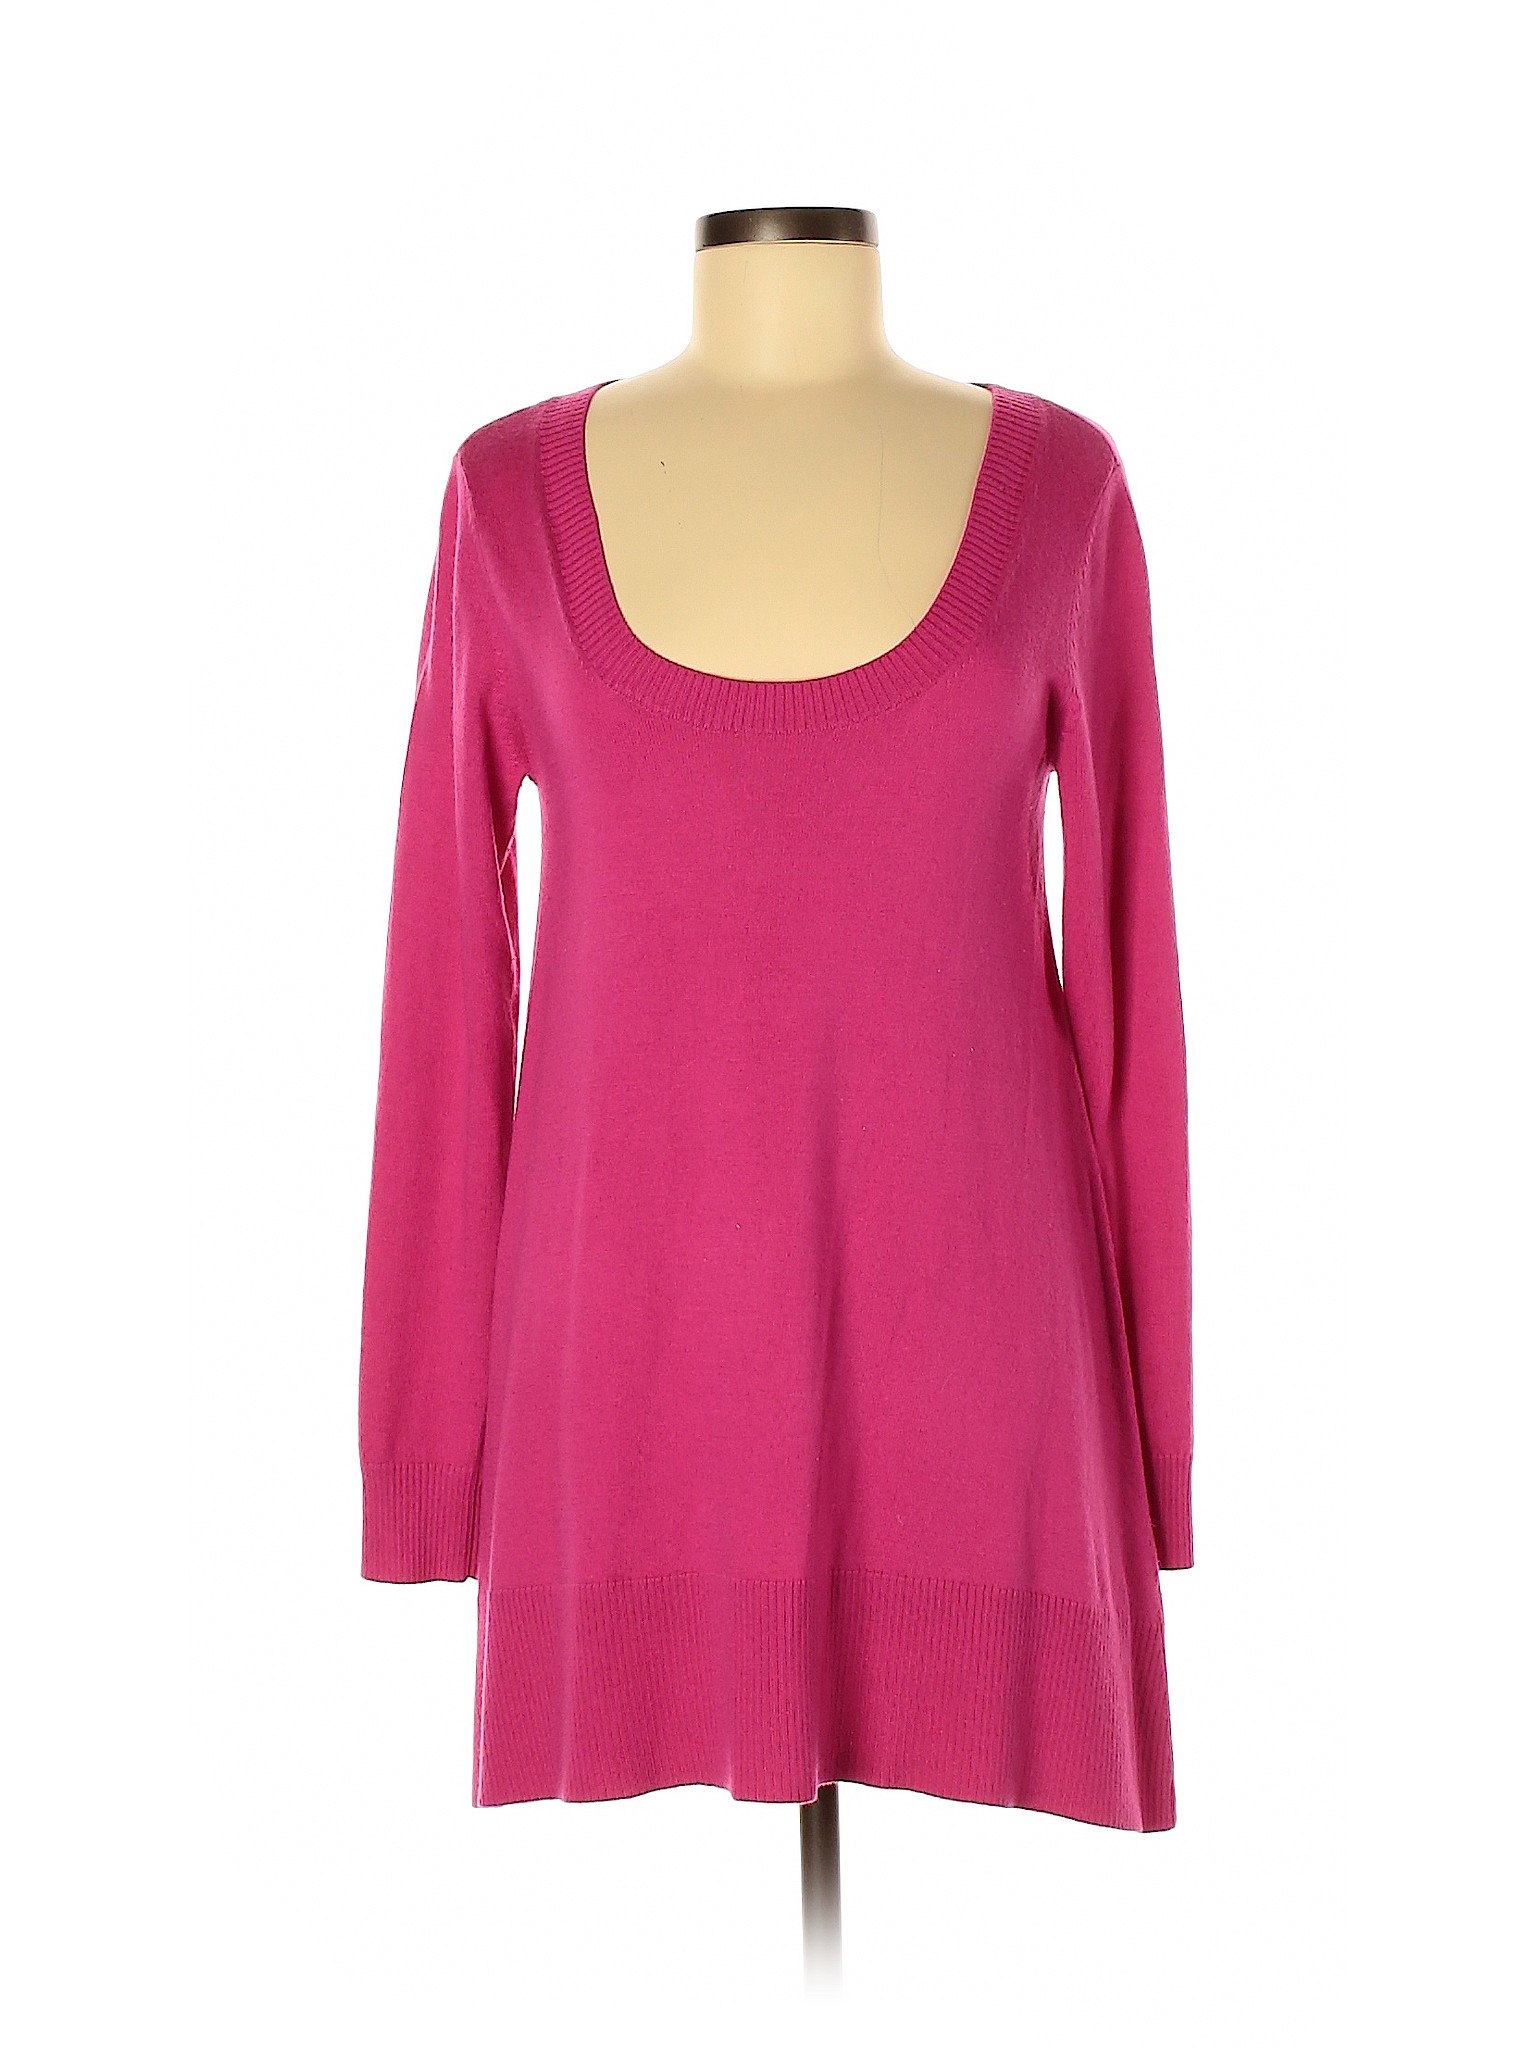 Boston Proper Women Pink Casual Dress S | eBay